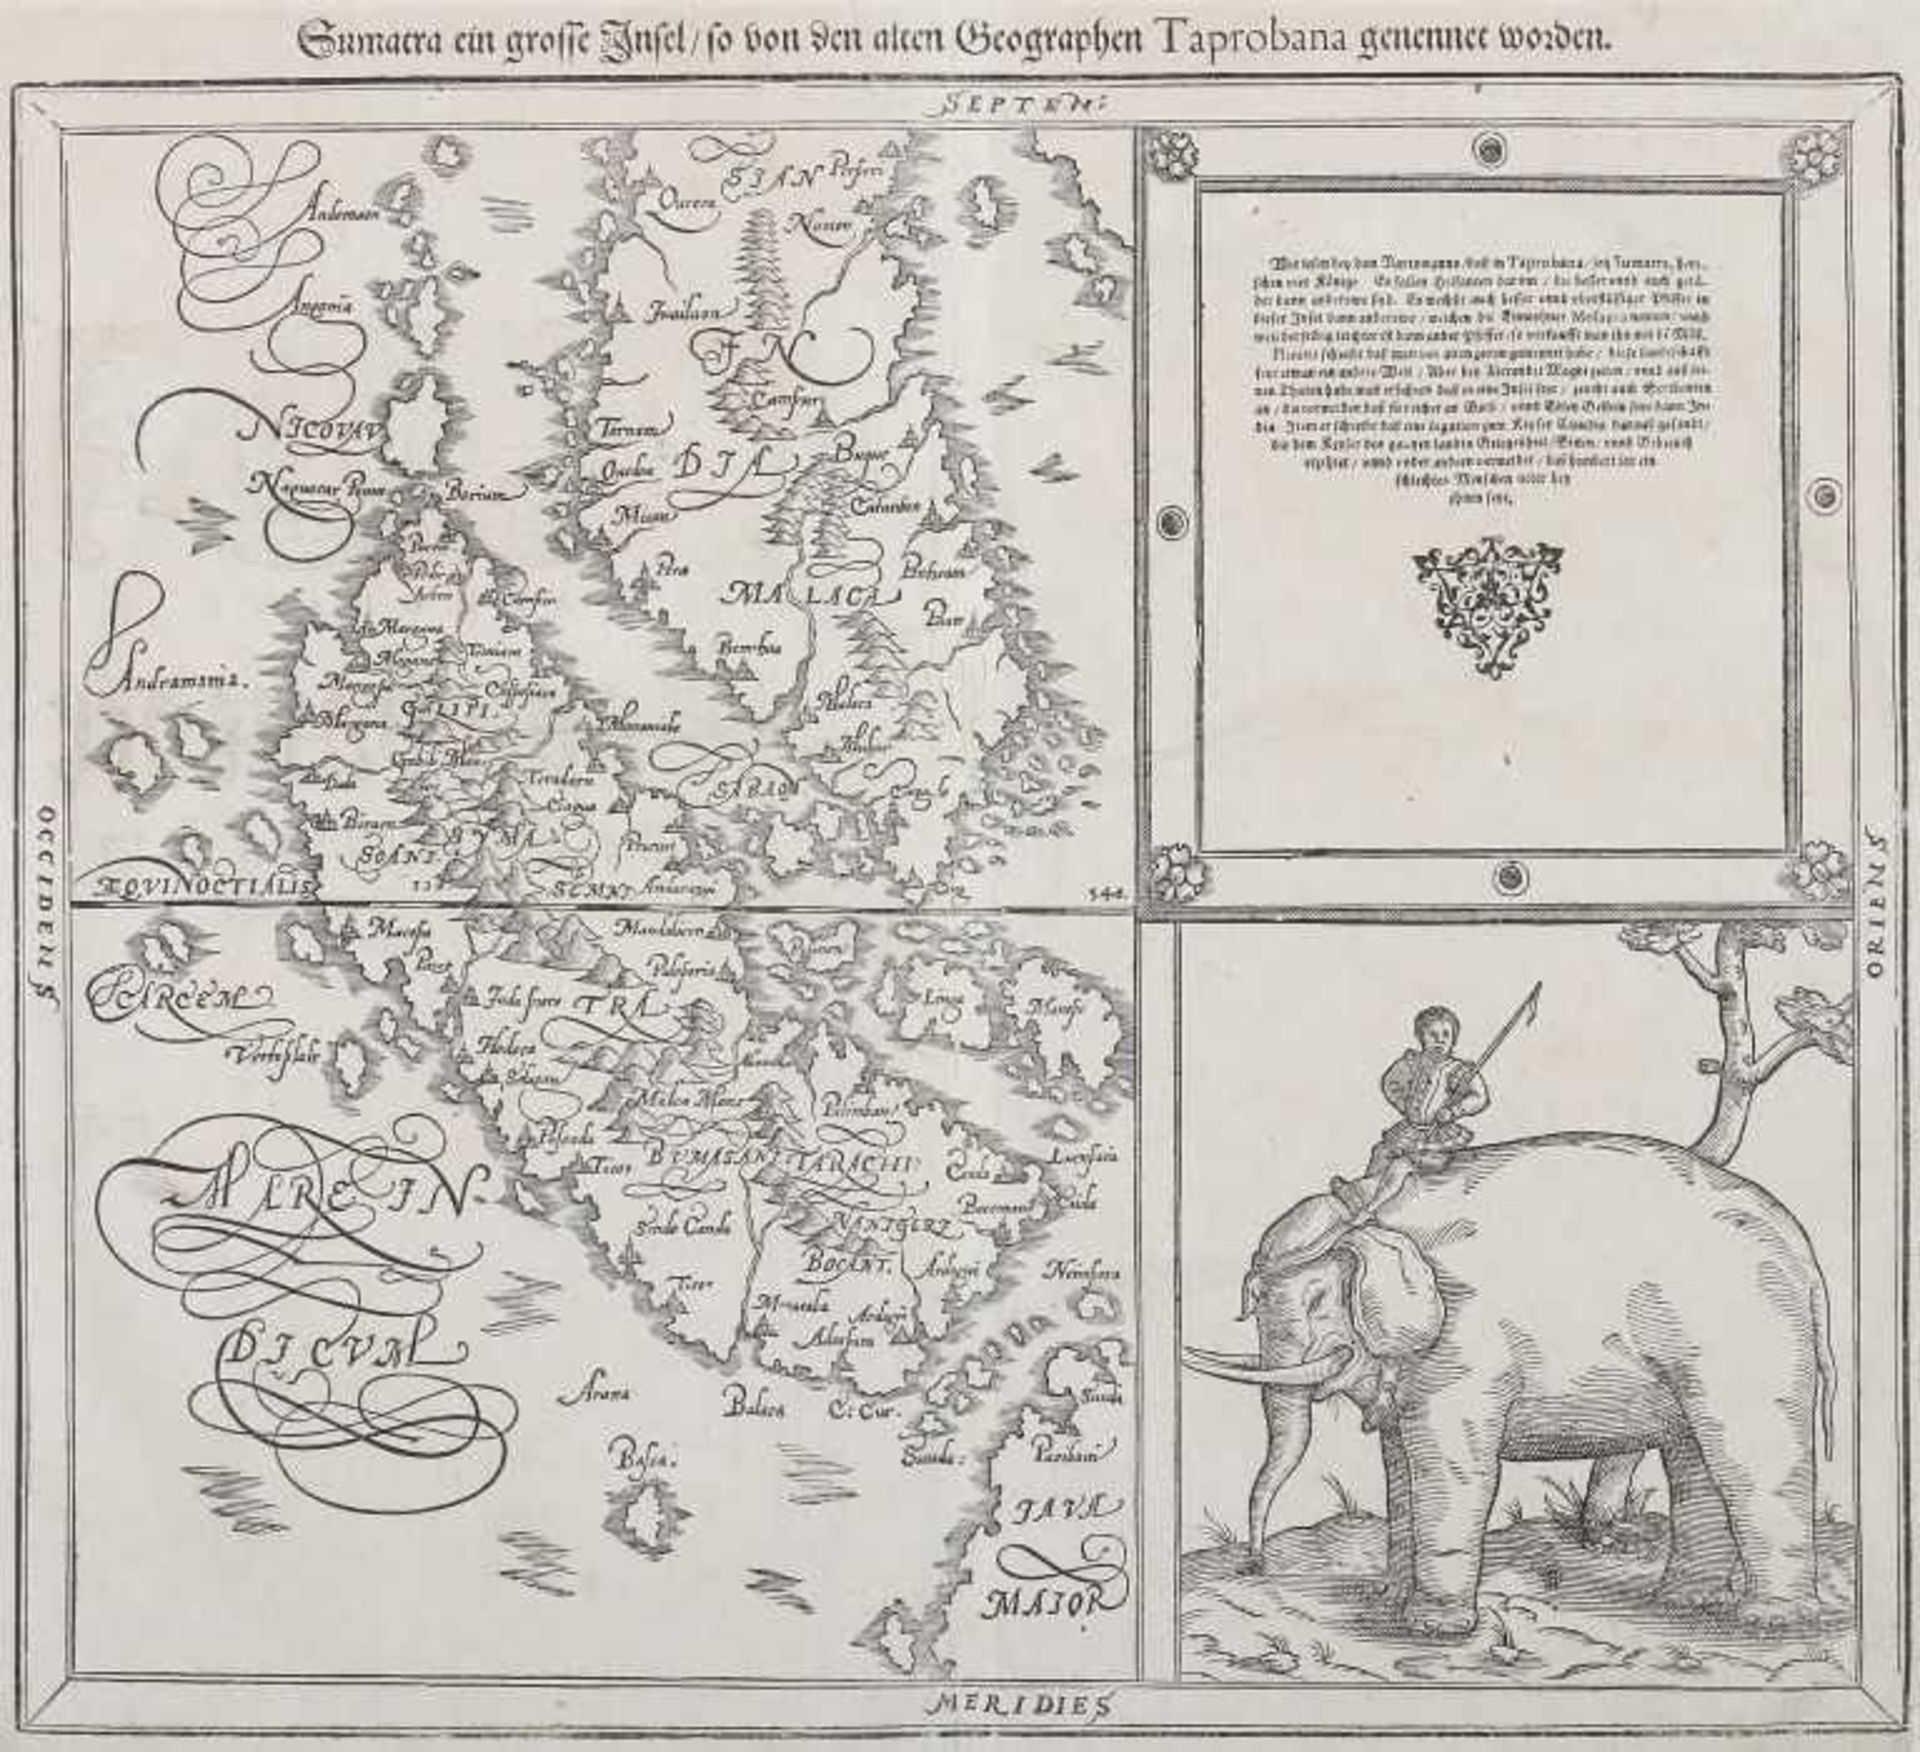 Münster, Sebastian 1489 - 1552. "Sumatra ein grosse Insel/ so von den alten Geographen Taprobana